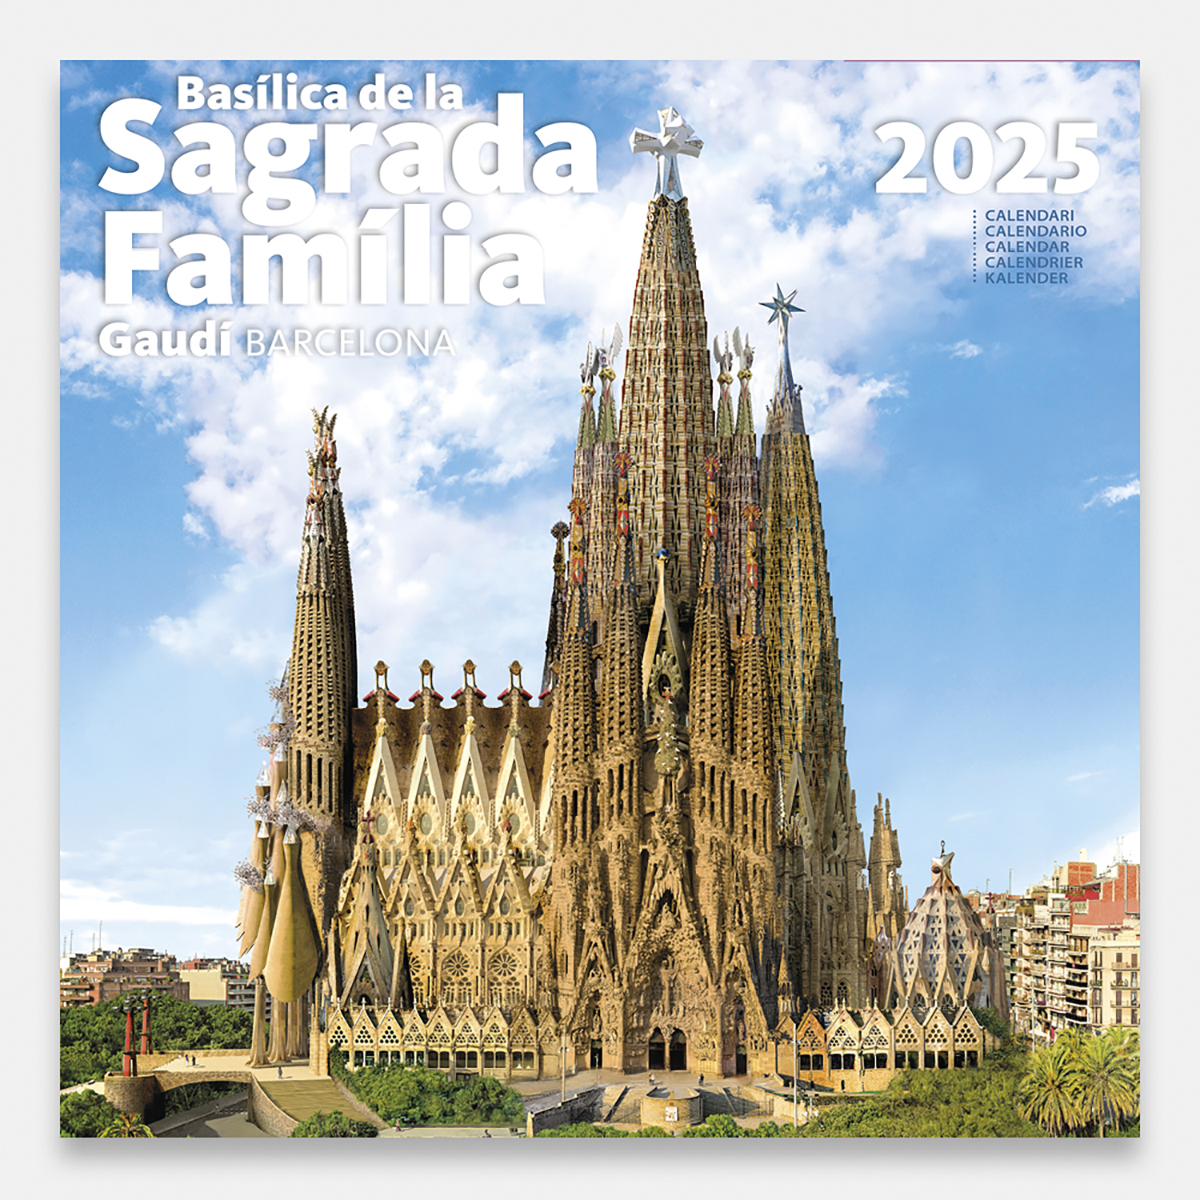 Calendario 2025 Basílica de la Sagrada Família 25sfg1 calendario pared 2025 gaudi sagrada familia